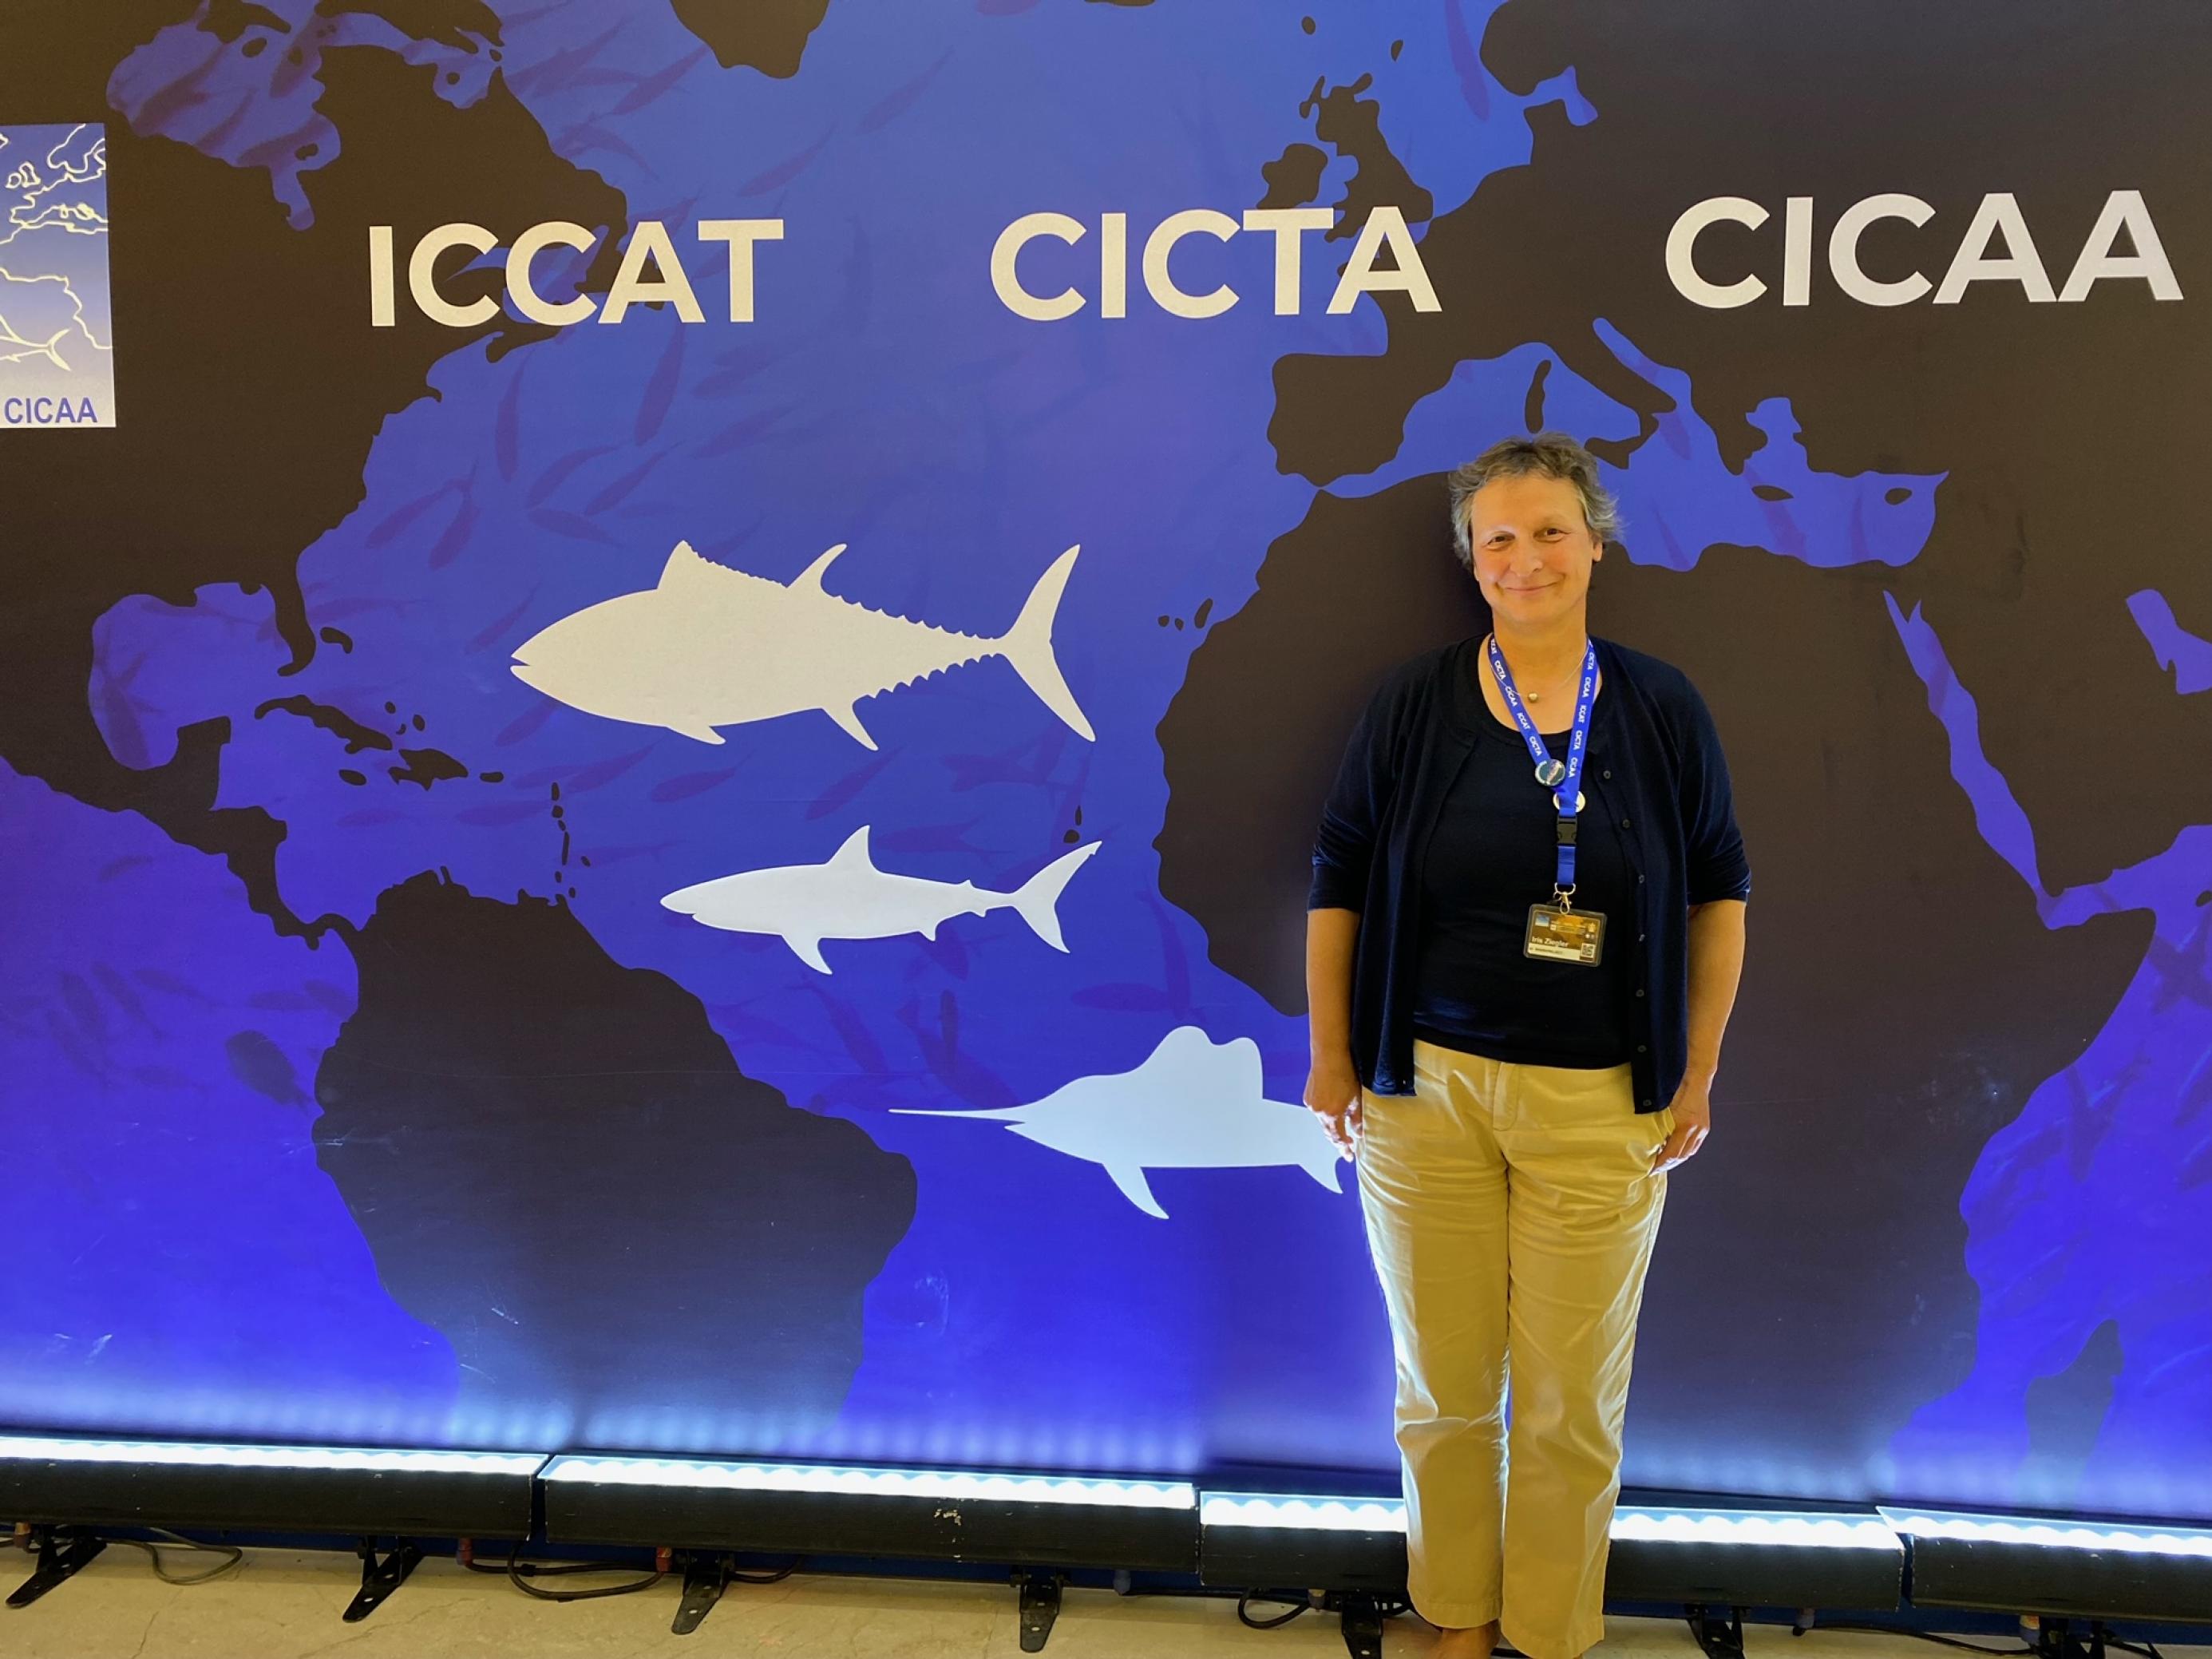 Iris Ziegler steht vor einer Wand mit dem Logo von ICCAT. Sie trägt eine helle Hose.